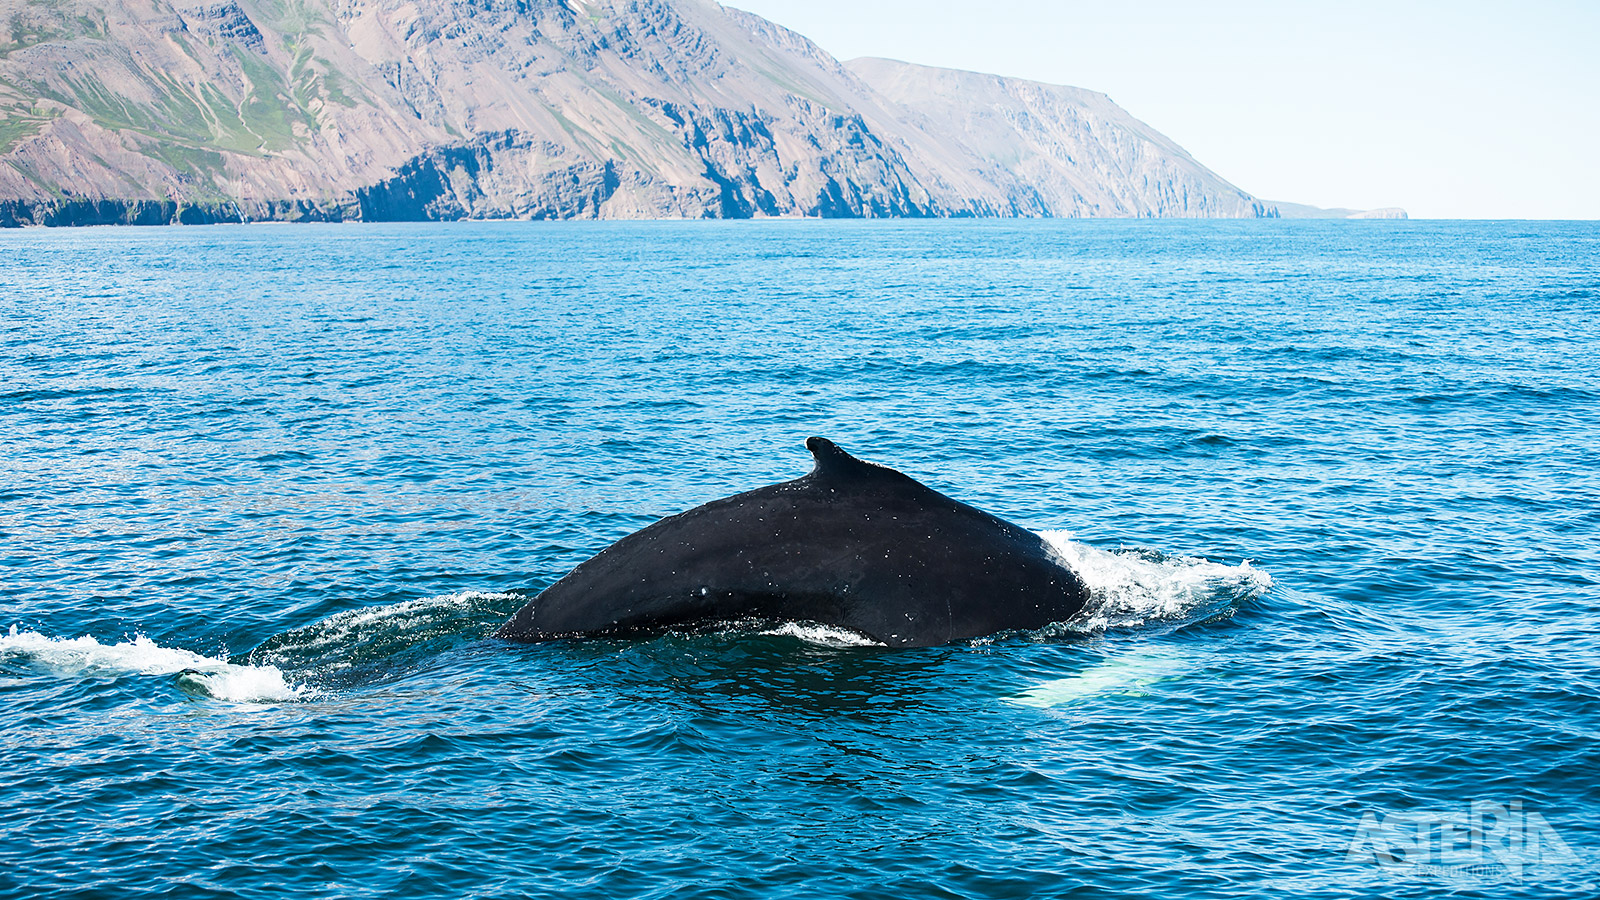 Stap in Reykjavik aan boord van een boot en ga op zoek naar bultruggen, dolfijnen en bruinvissen